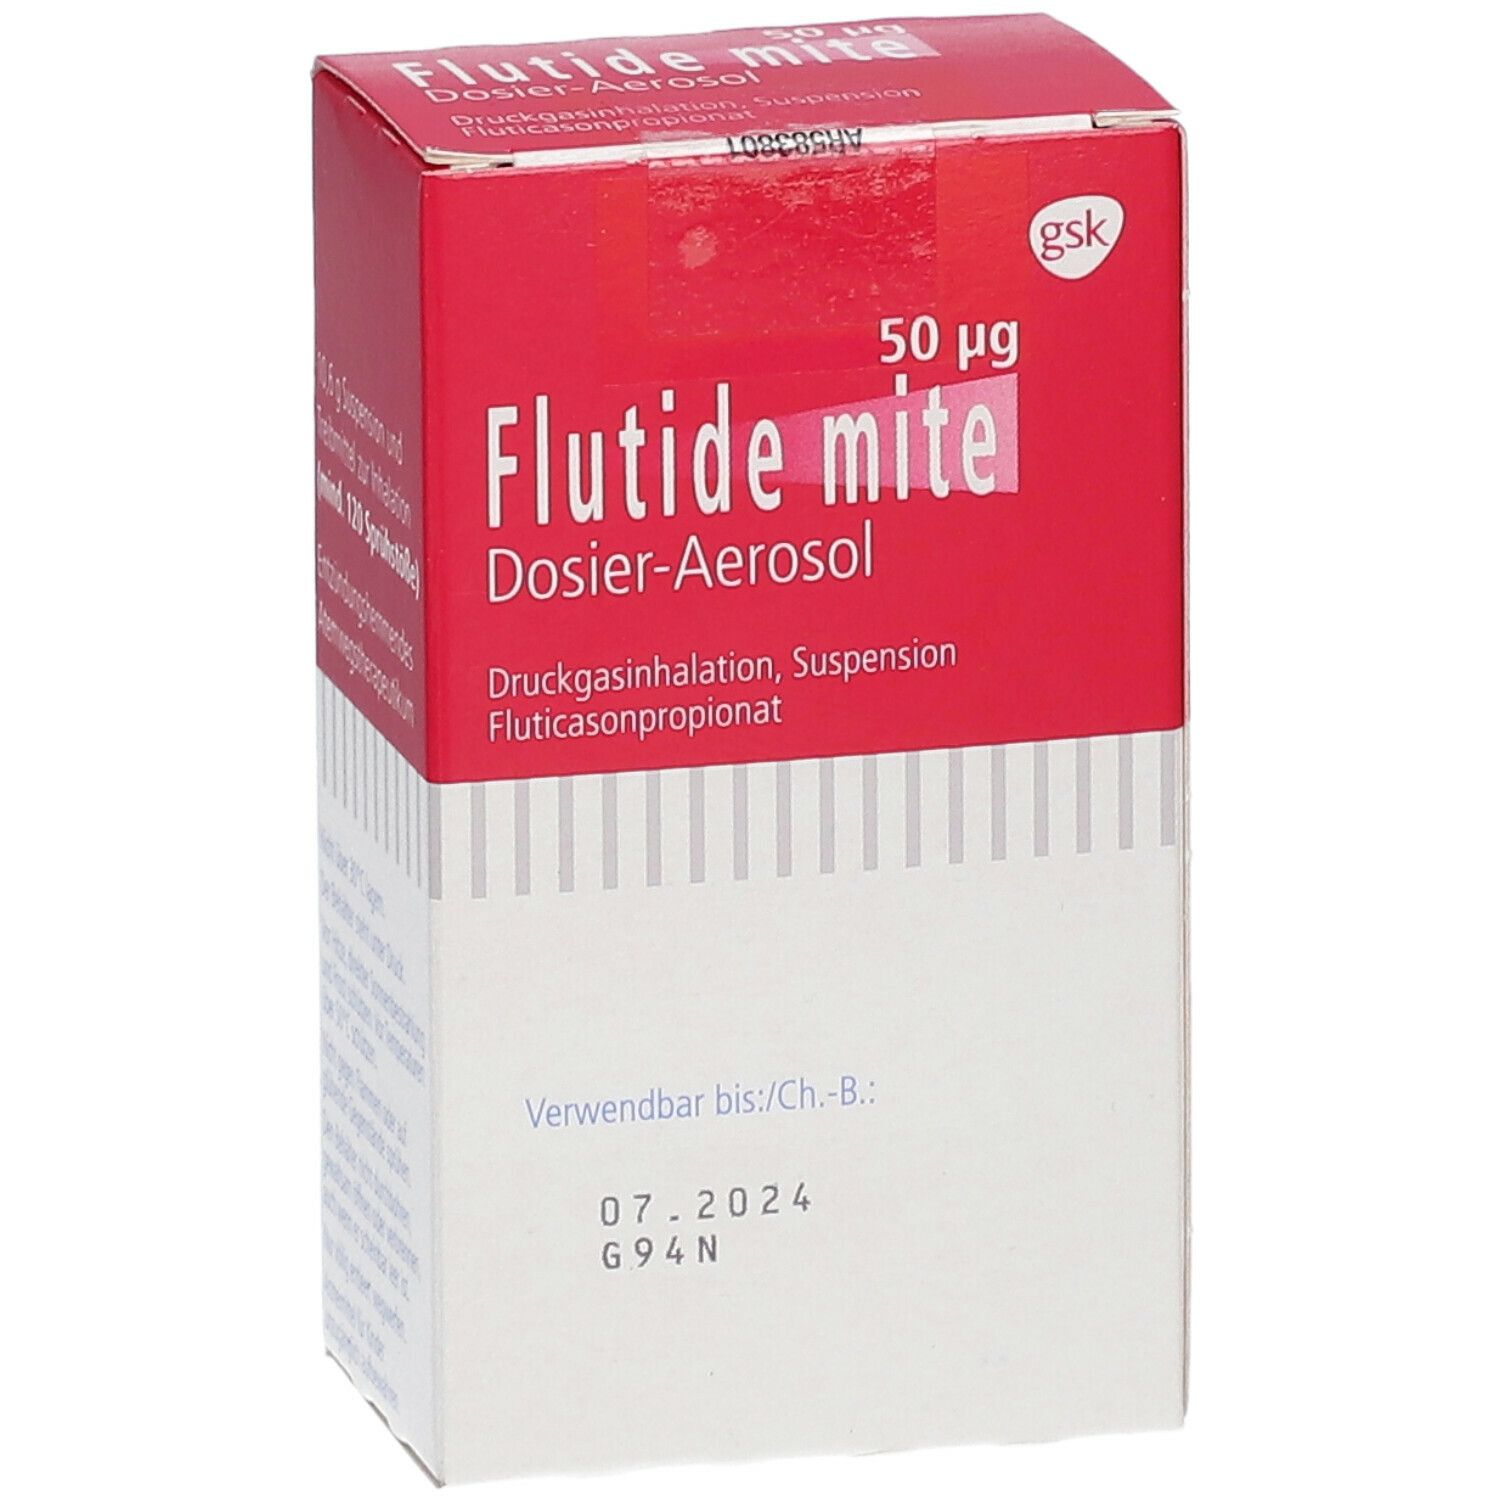 Flutide® mite 50 µg